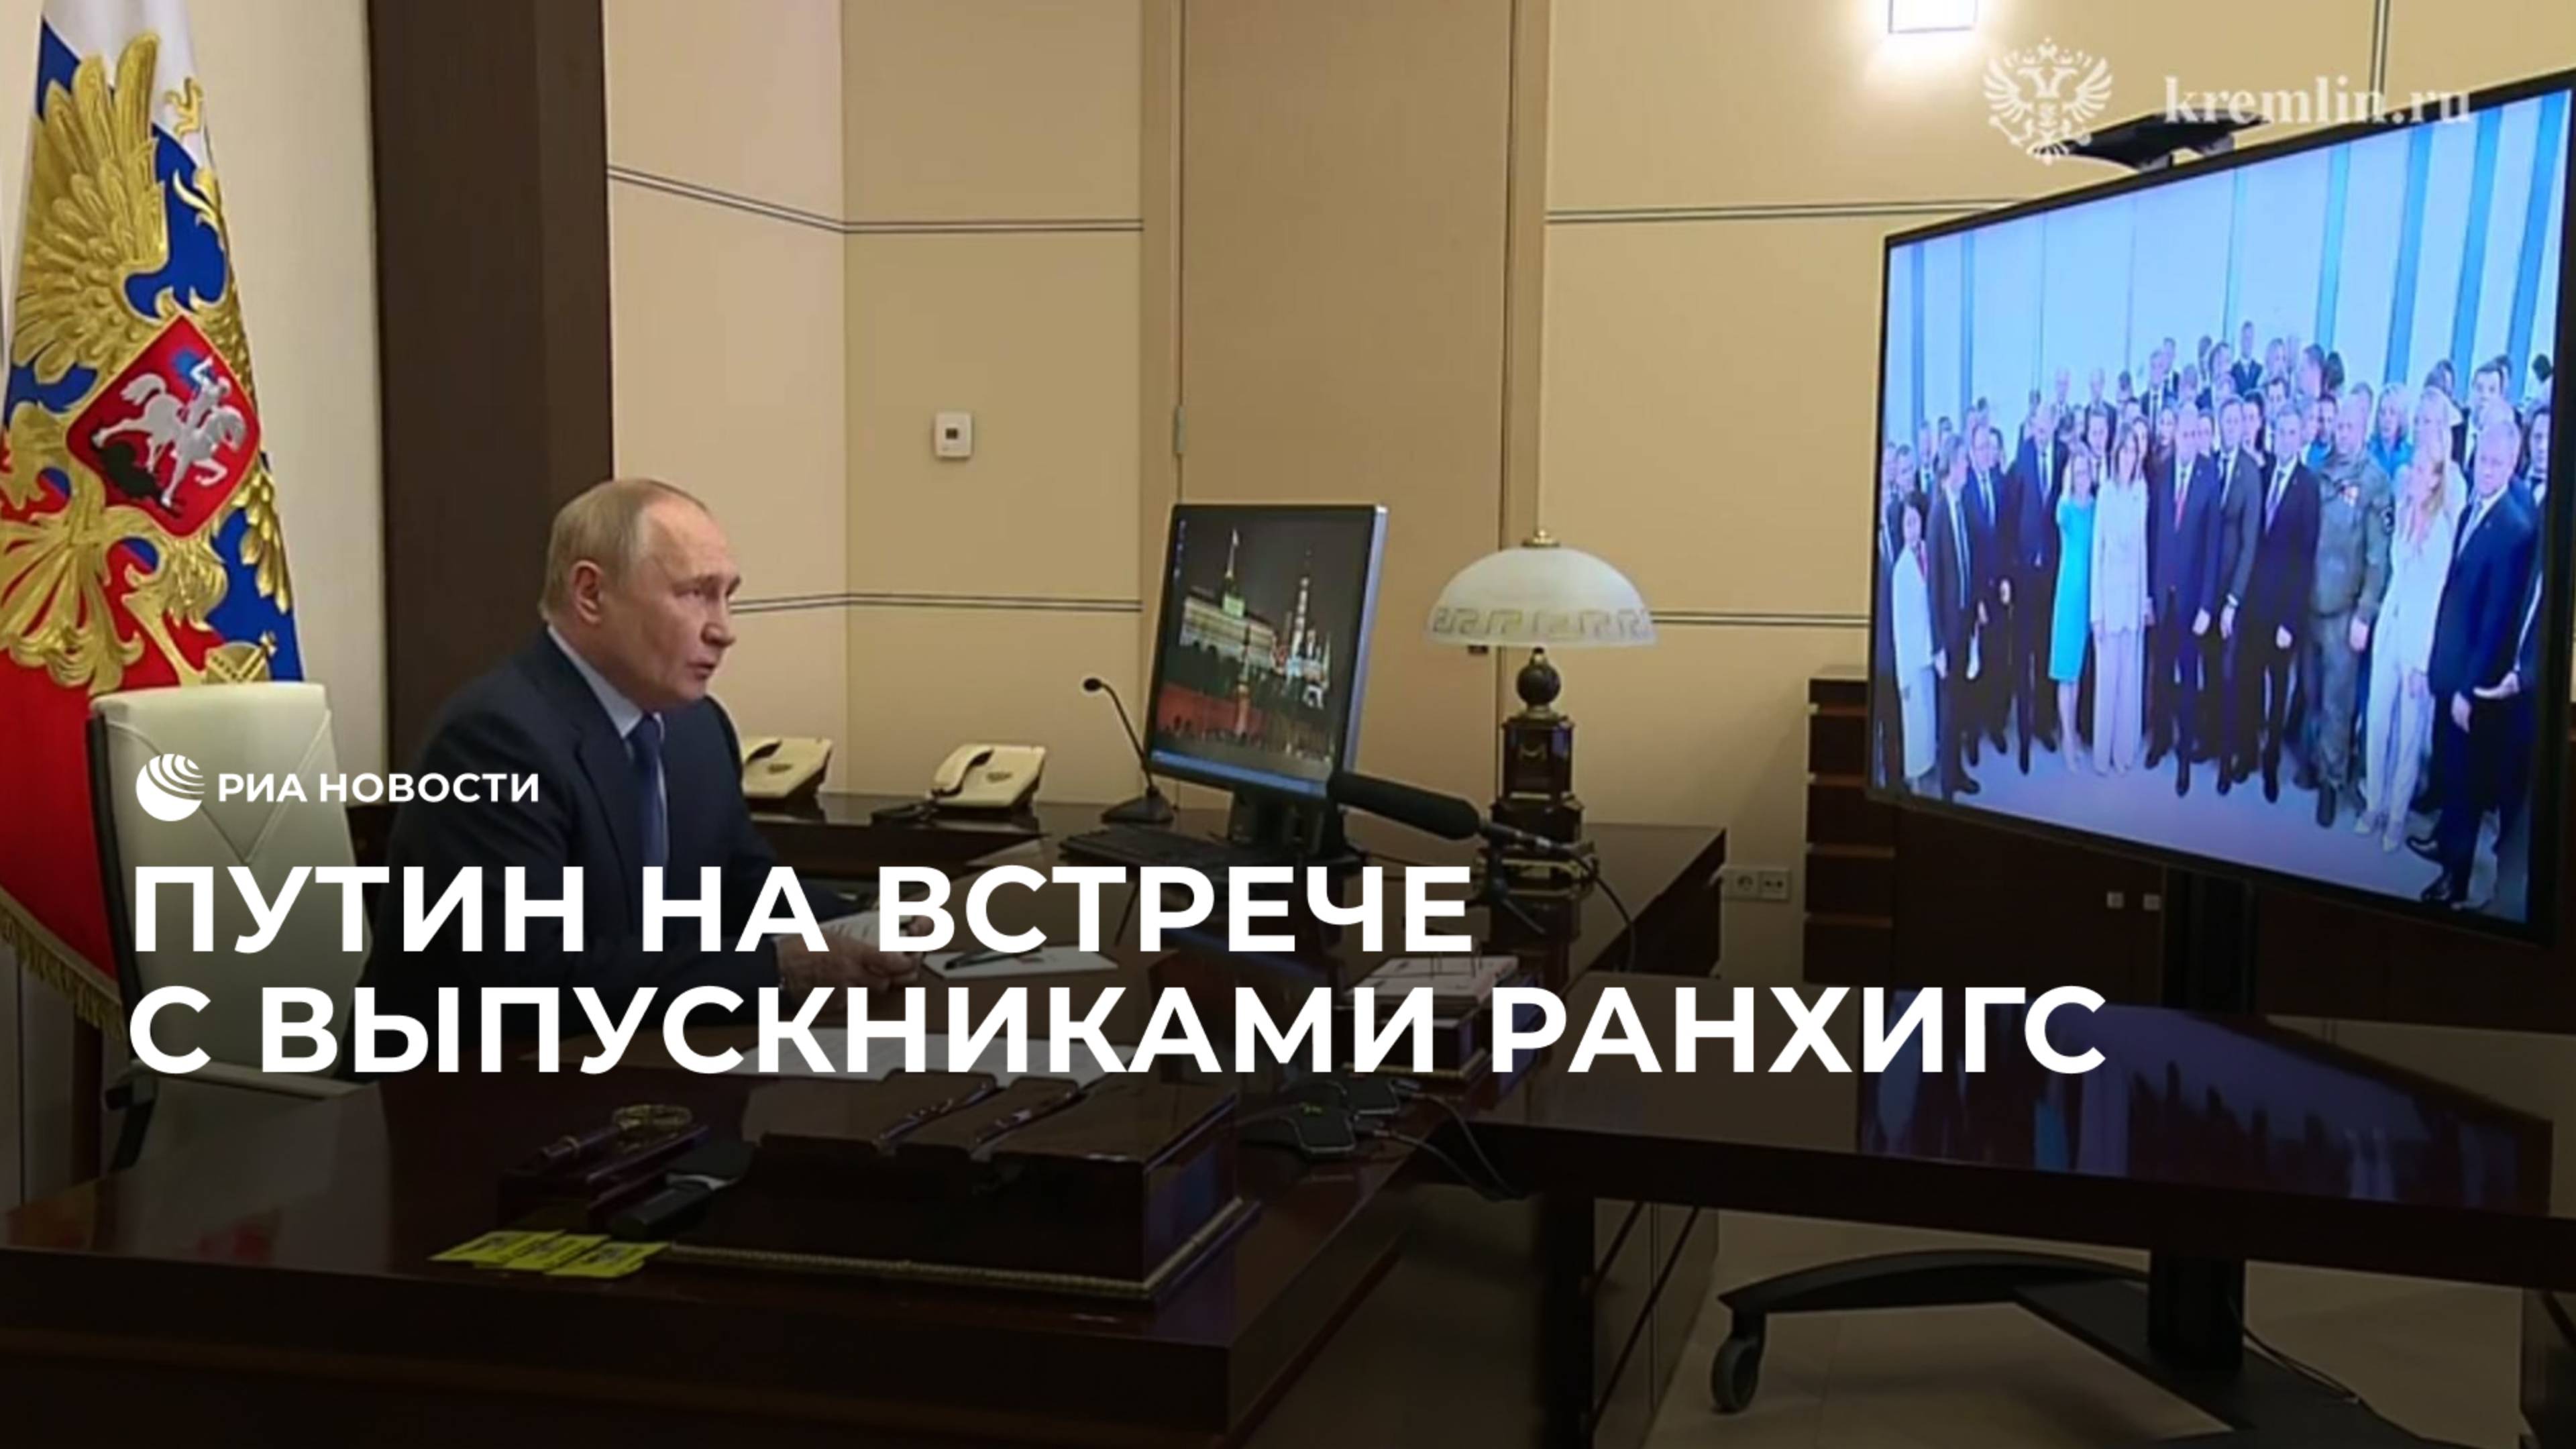 Путин на встрече с выпускниками РАНХиГС